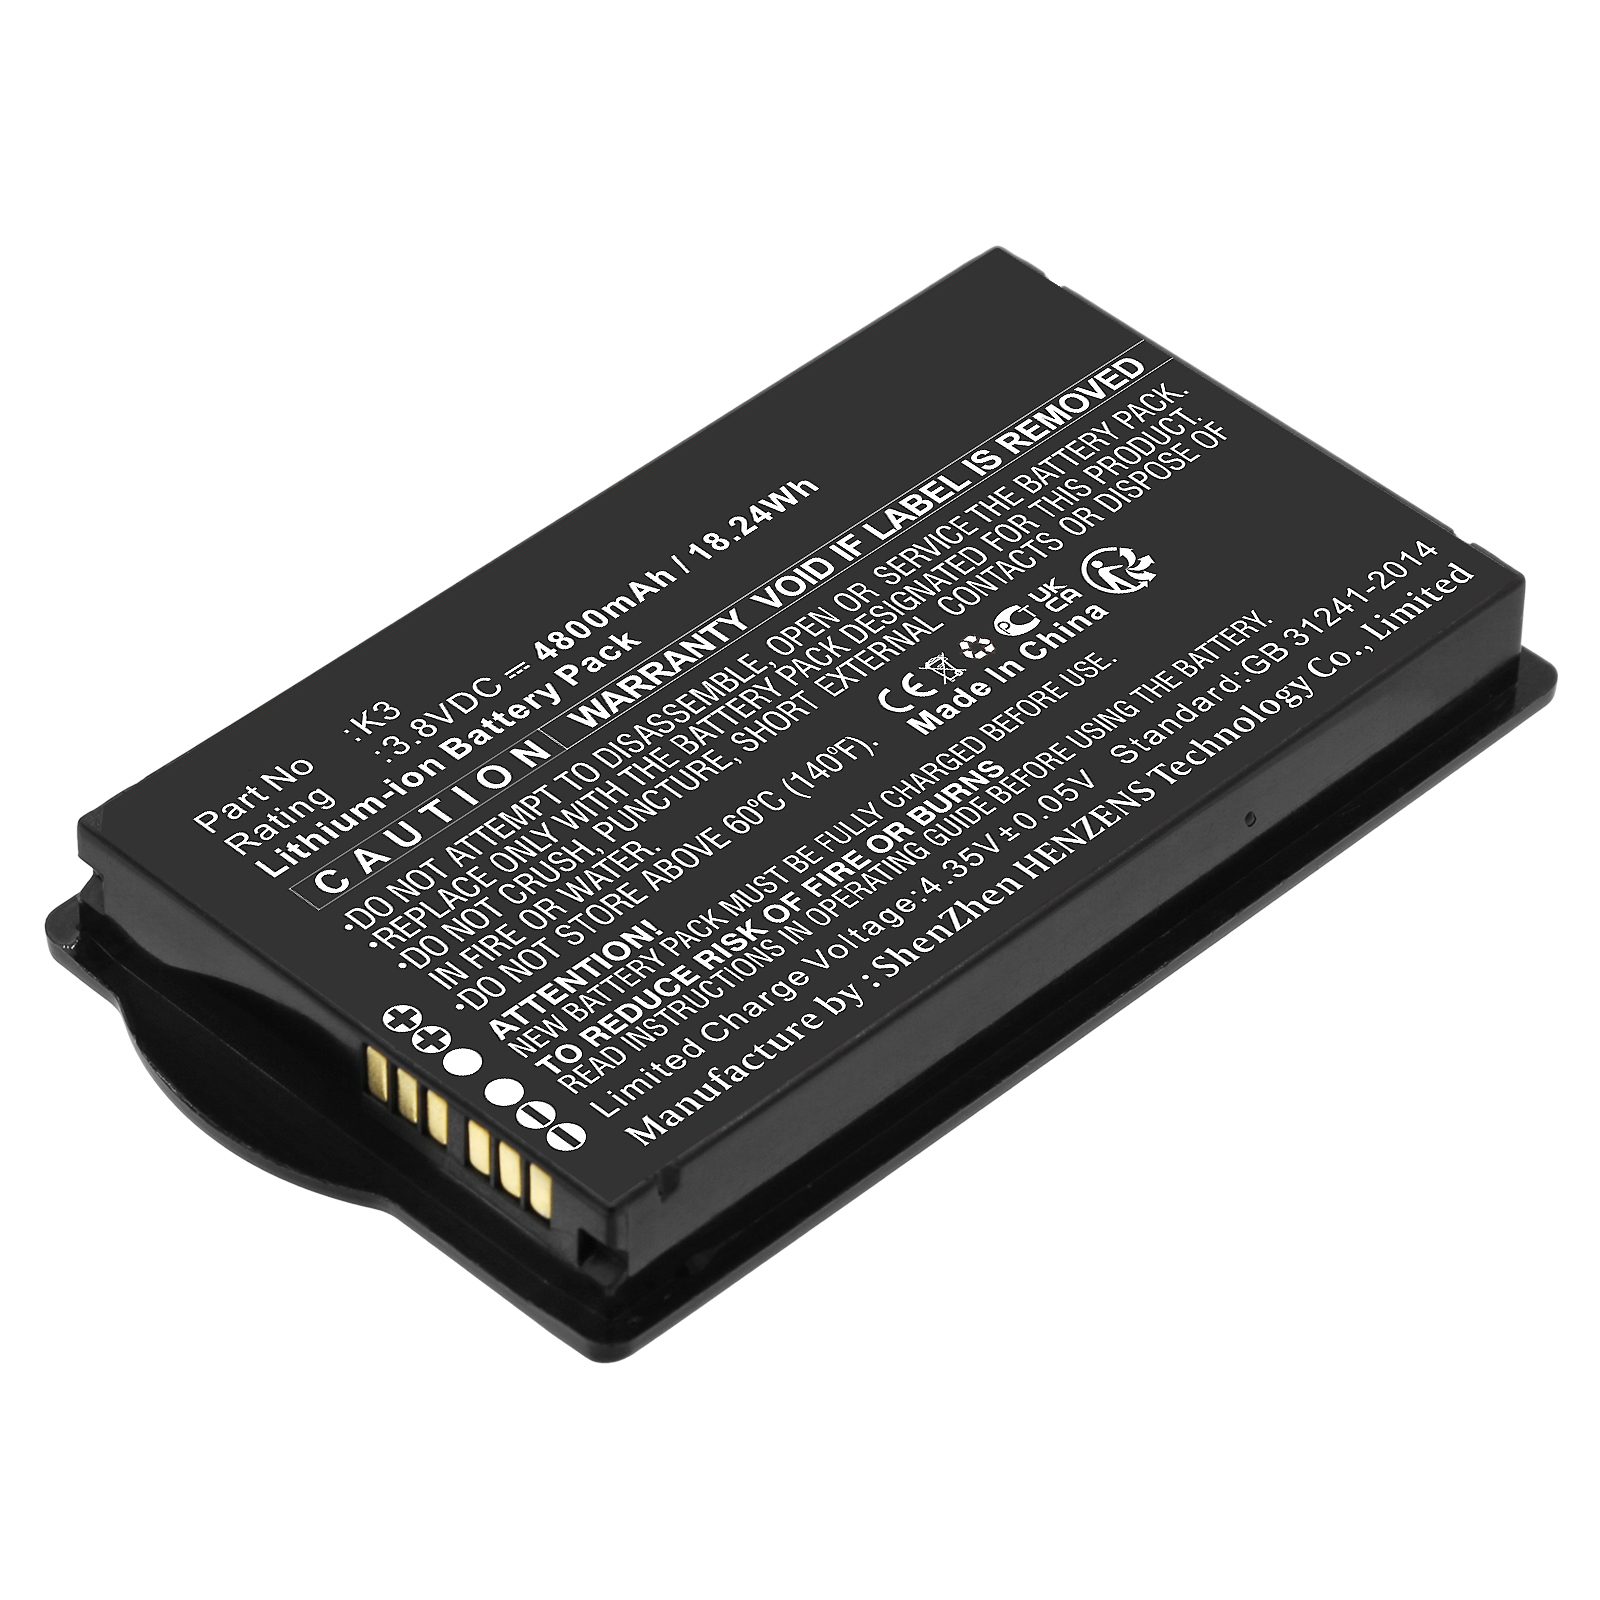 Synergy Digital Barcode Scanner Battery, Compatible with iData CLP606 Barcode Scanner Battery (Li-ion, 3.8V, 4800mAh)